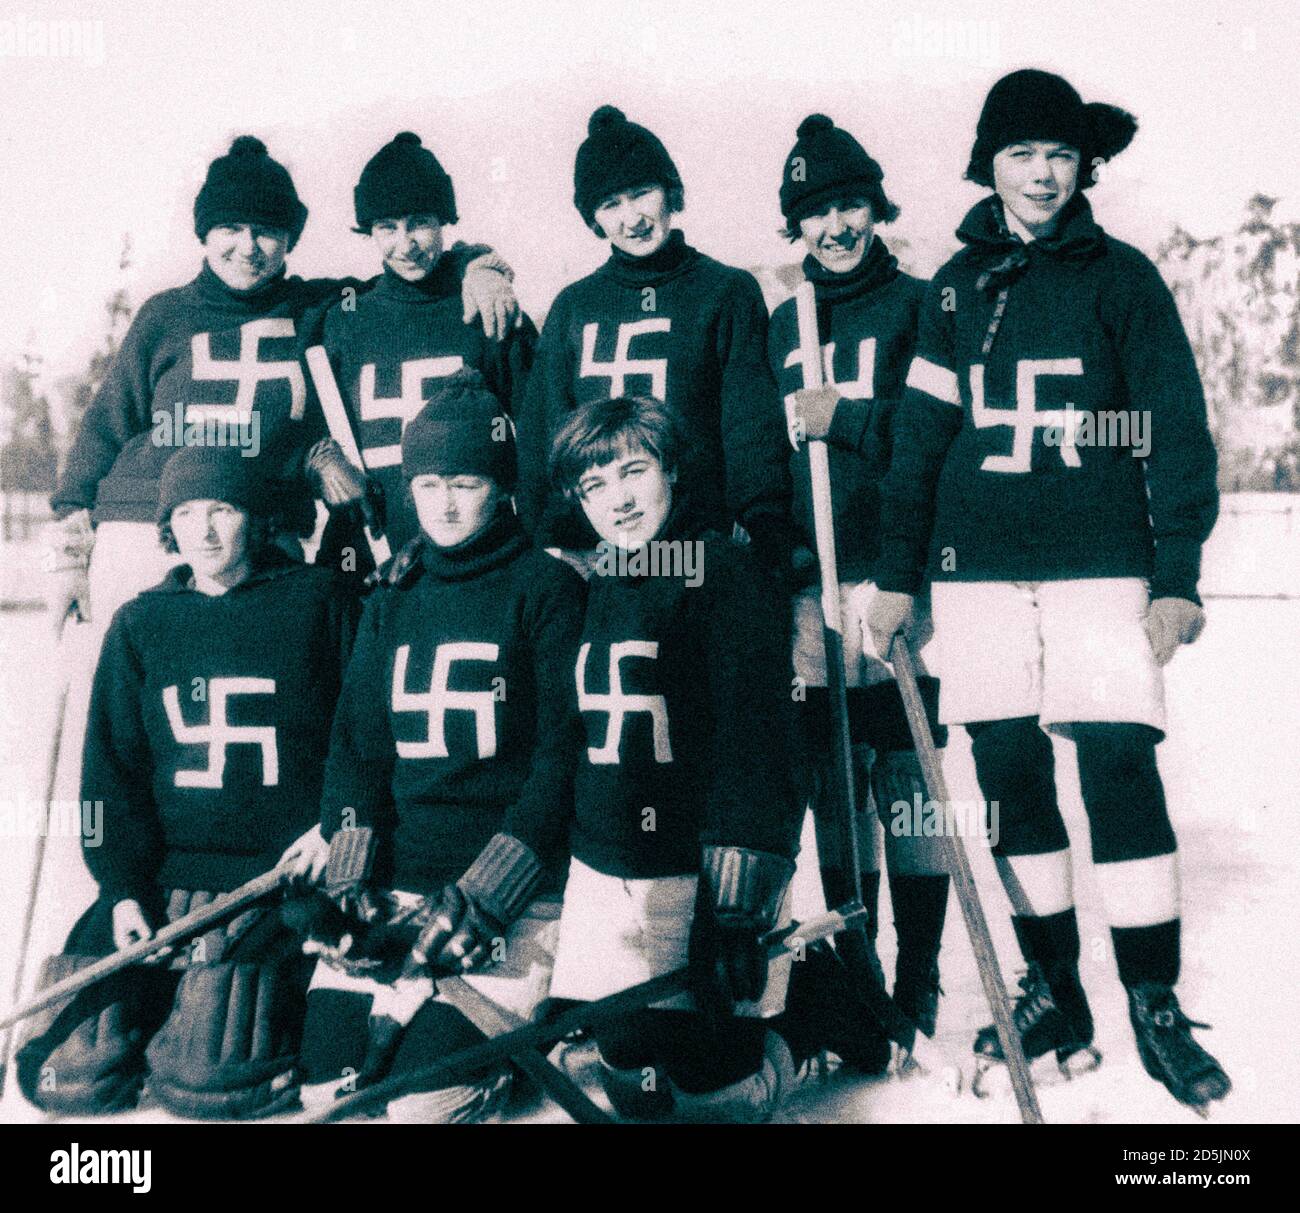 Foto retrò della squadra di hokey del ghiaccio di Fernie Swastikas. Canada. 1920 i Fernie Swastikas erano una squadra femminile di hockey che è stata formata in 1922 a Fernie, Fr Foto Stock